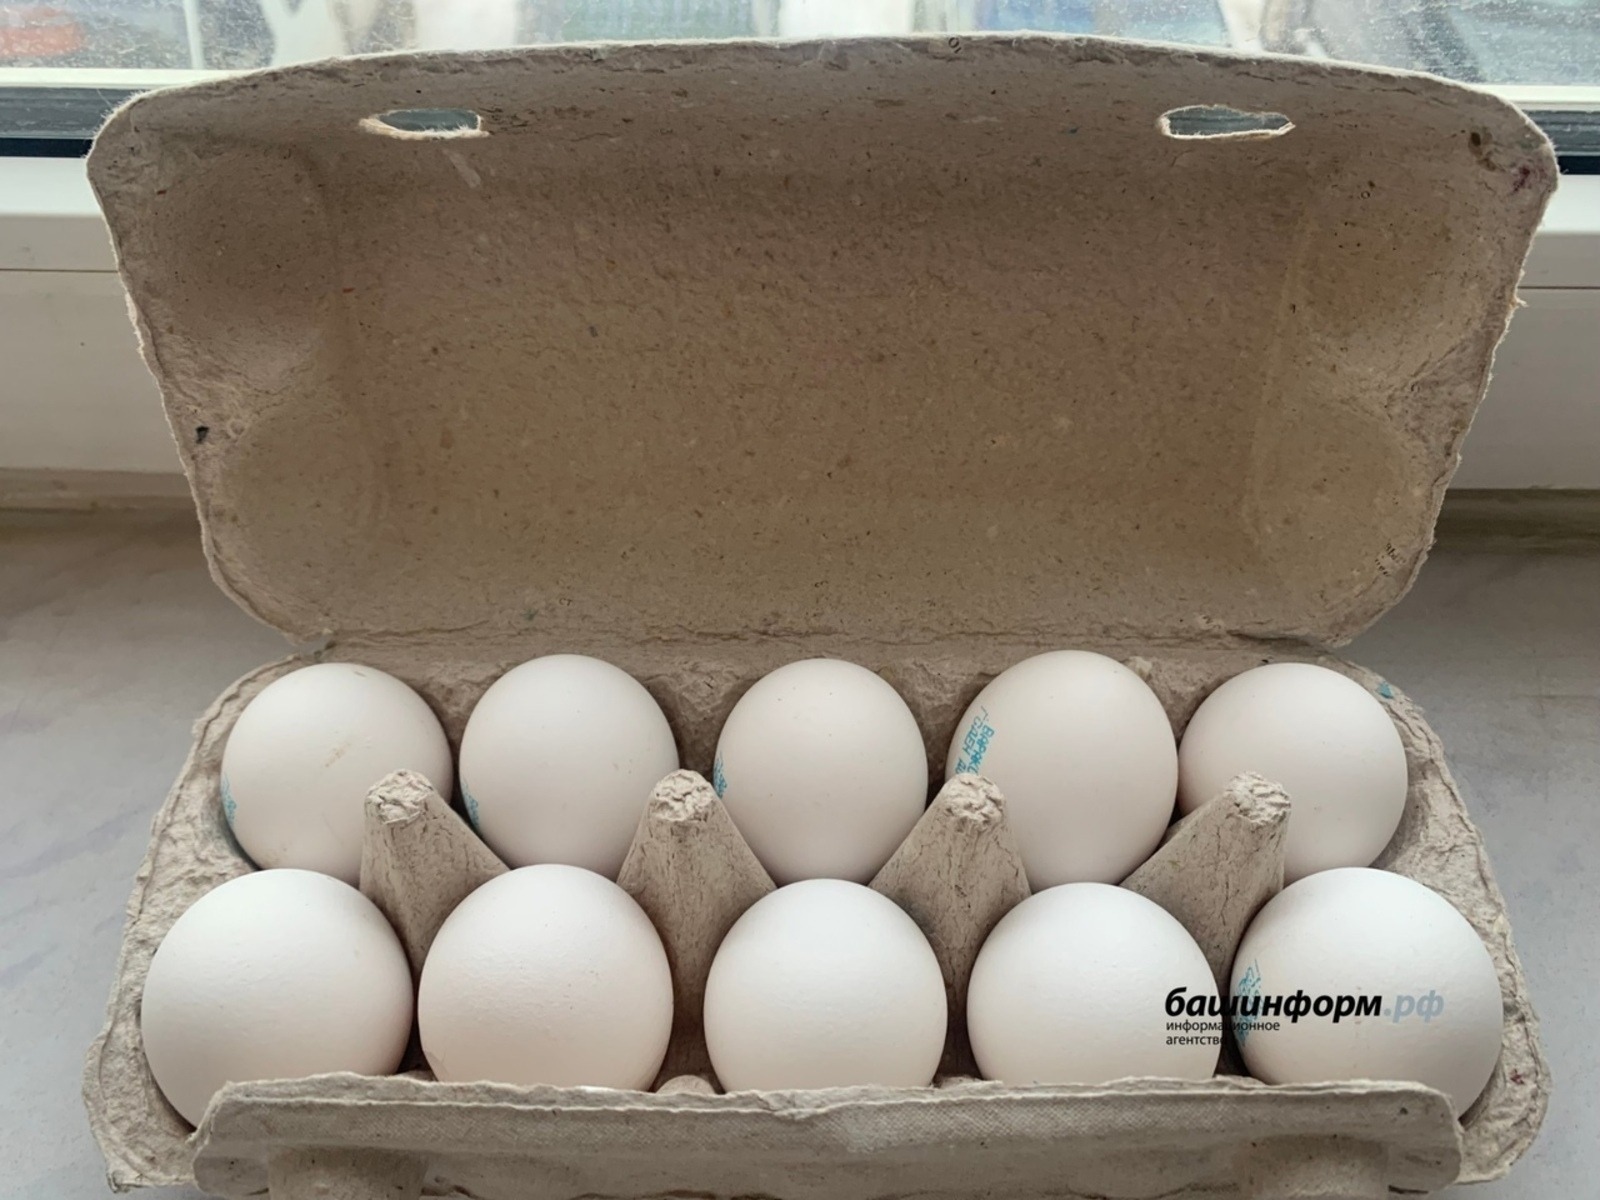 ФАС проверяет «Магнит», «Пятерочка» и другие крупные торговые сети из-за роста цен на яйца